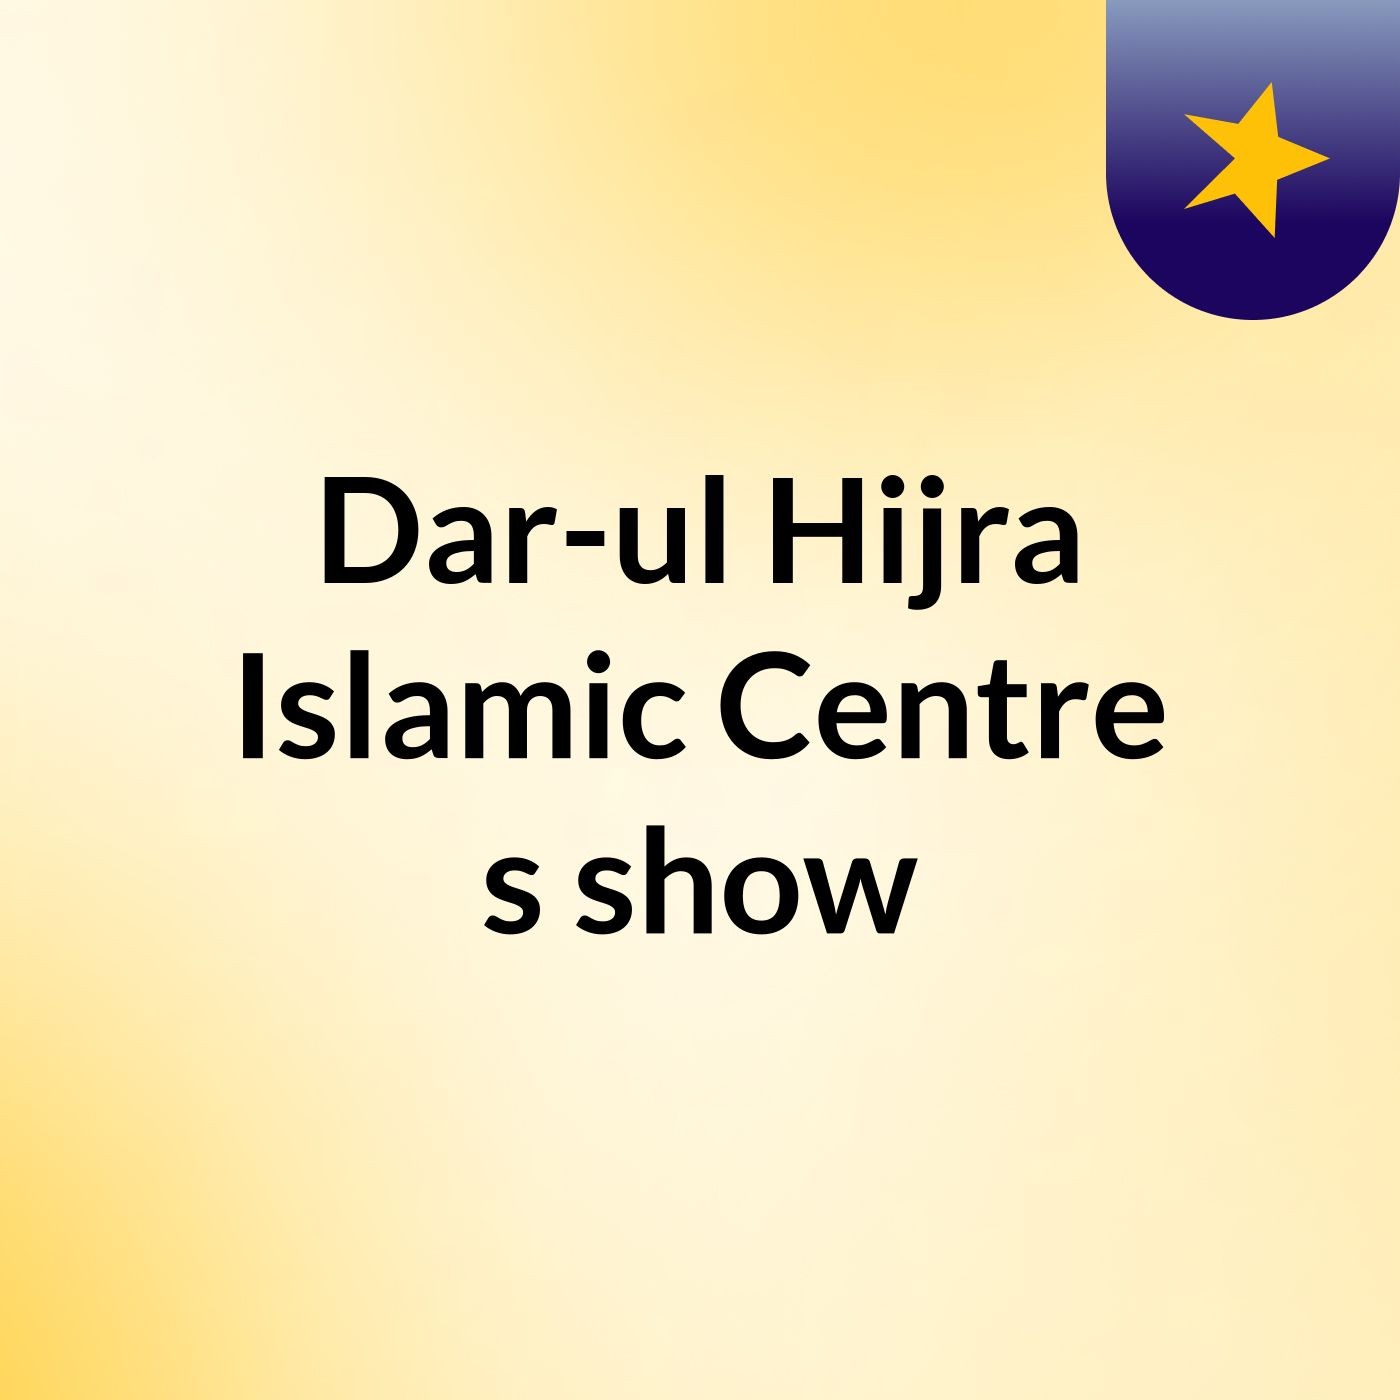 Dar-ul Hijra Islamic Centre's show